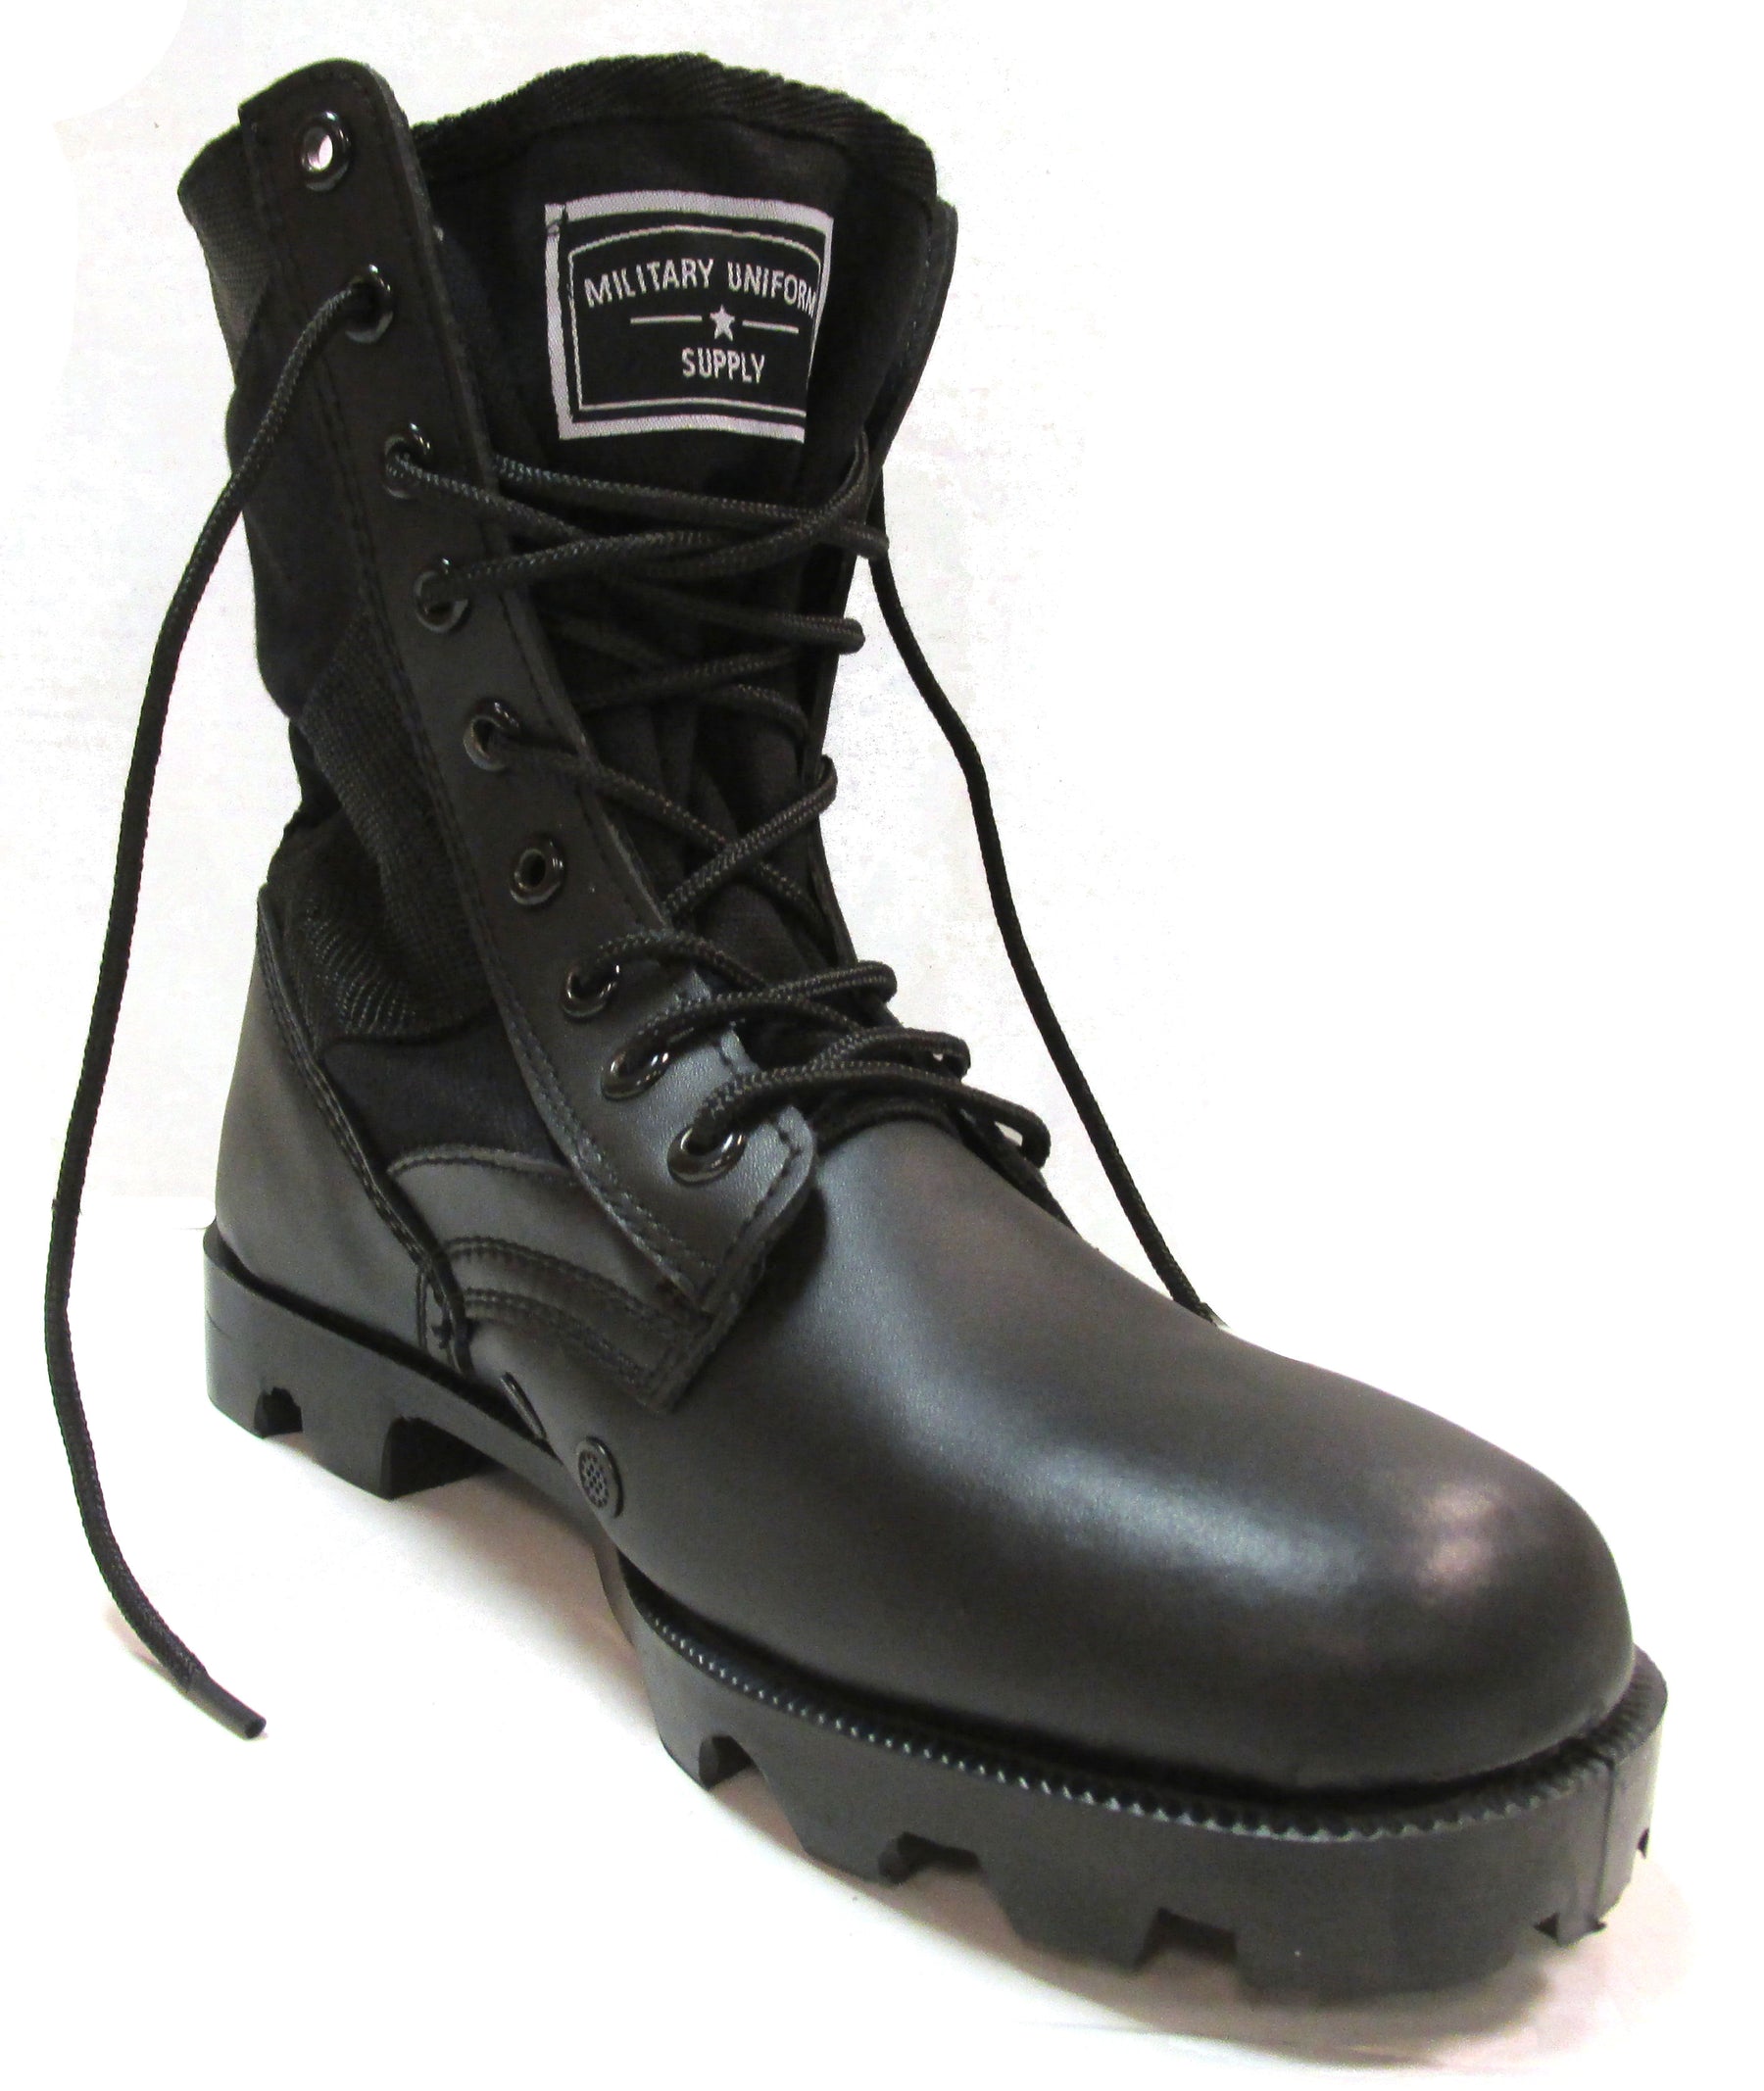 Military Uniform Supply Black Jungle Boots - Men's Combat Boots